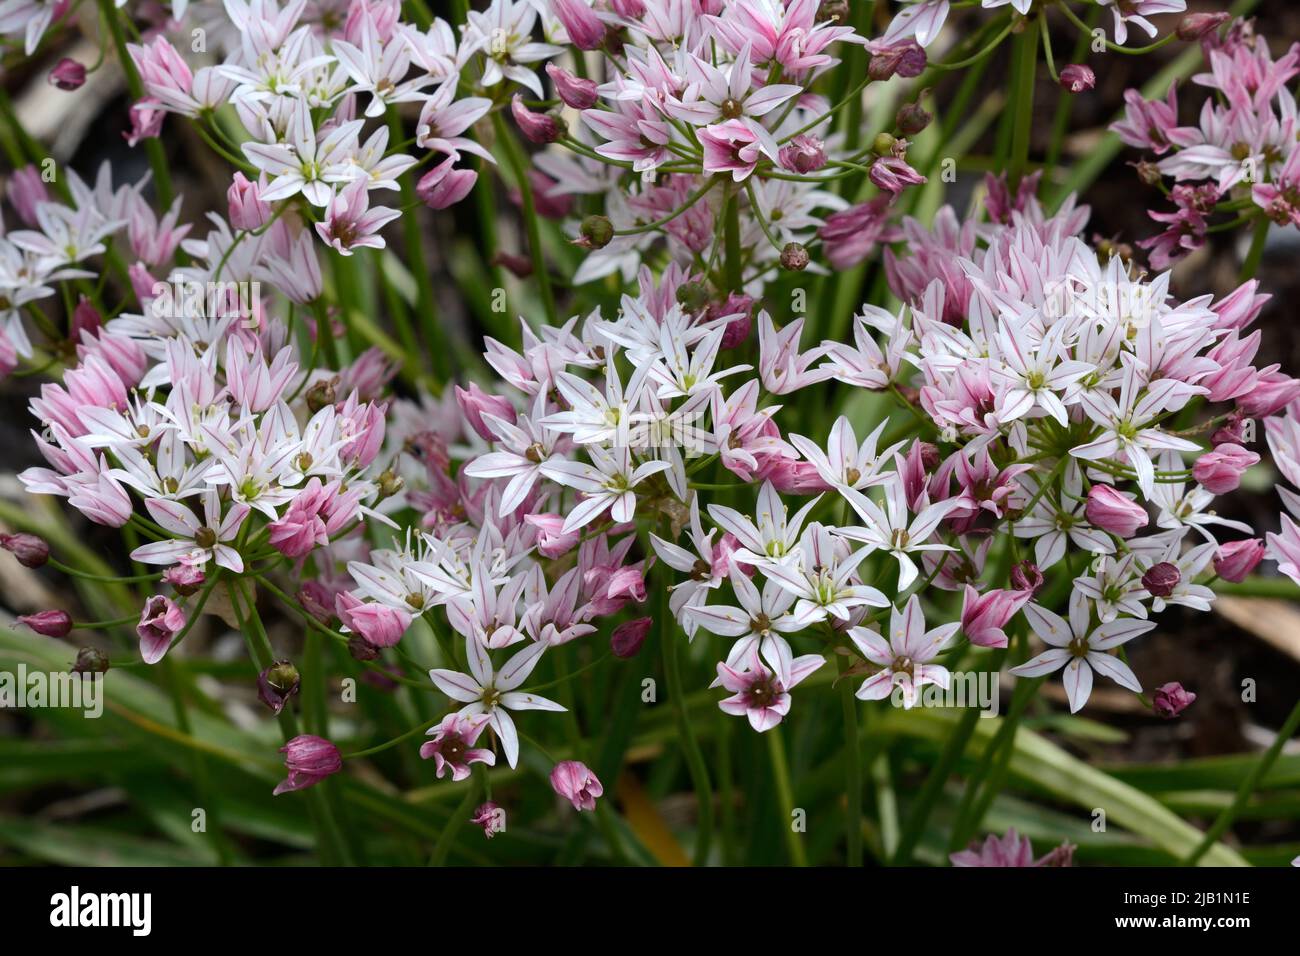 Allium camelion flores ornamentales cebolla rosa oscuro flores que se desvanecen a blanco Foto de stock